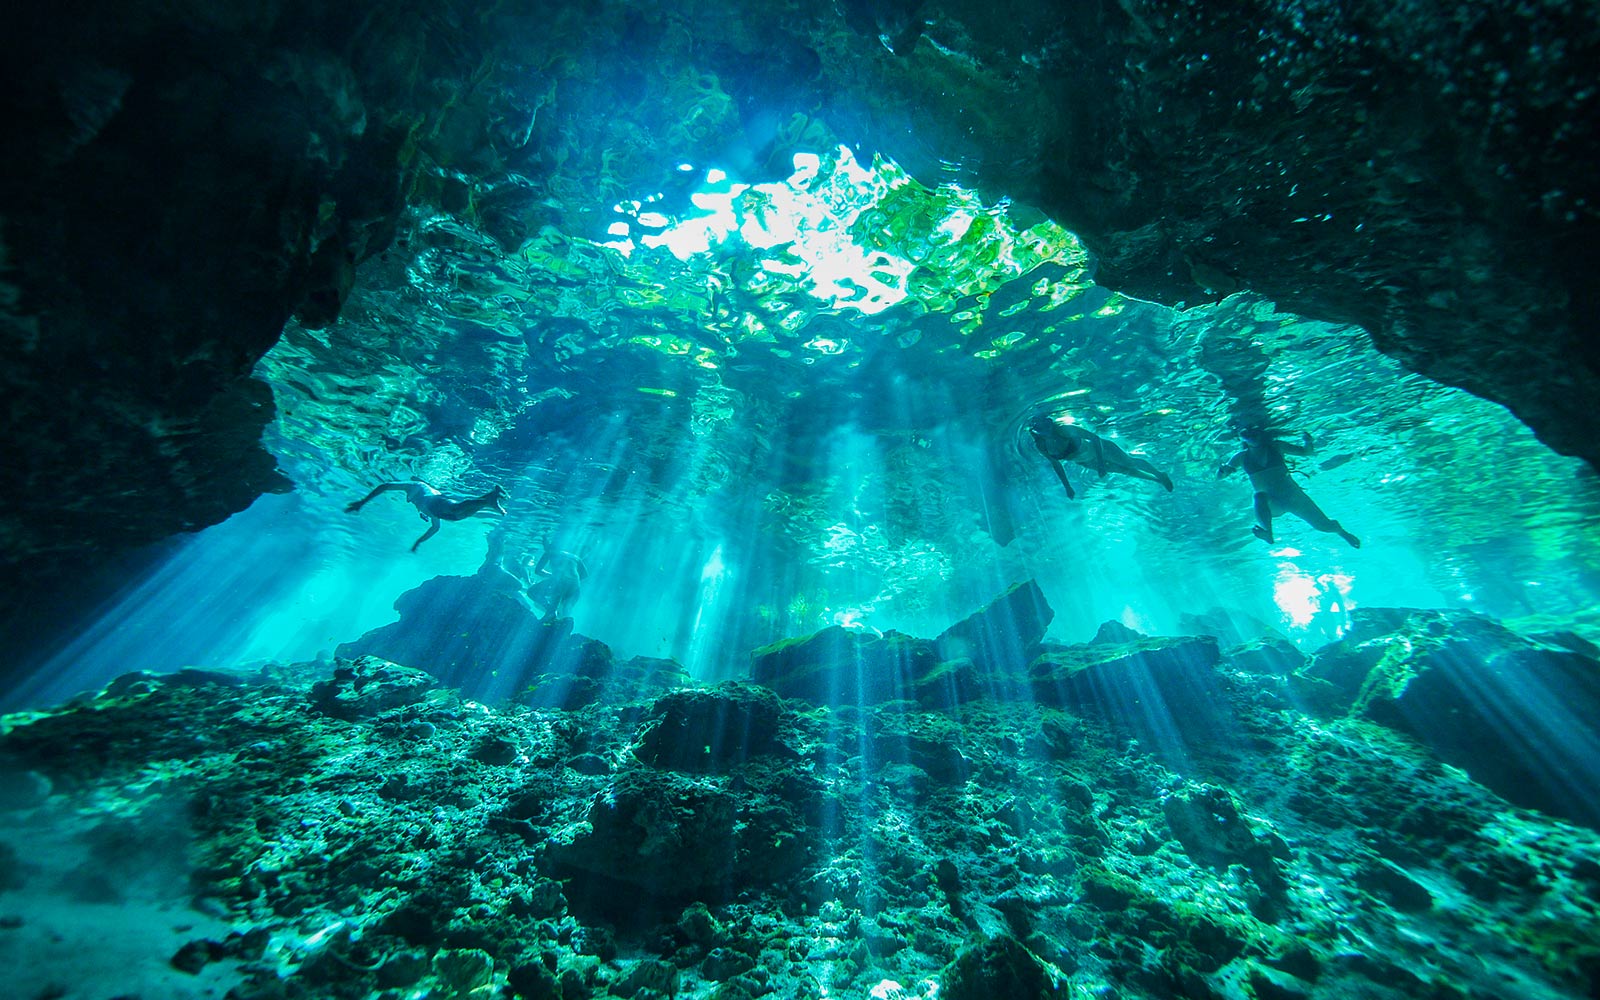 Scena subacquea illuminata da raggi di luce che penetrano nell'acqua (riproduci video).